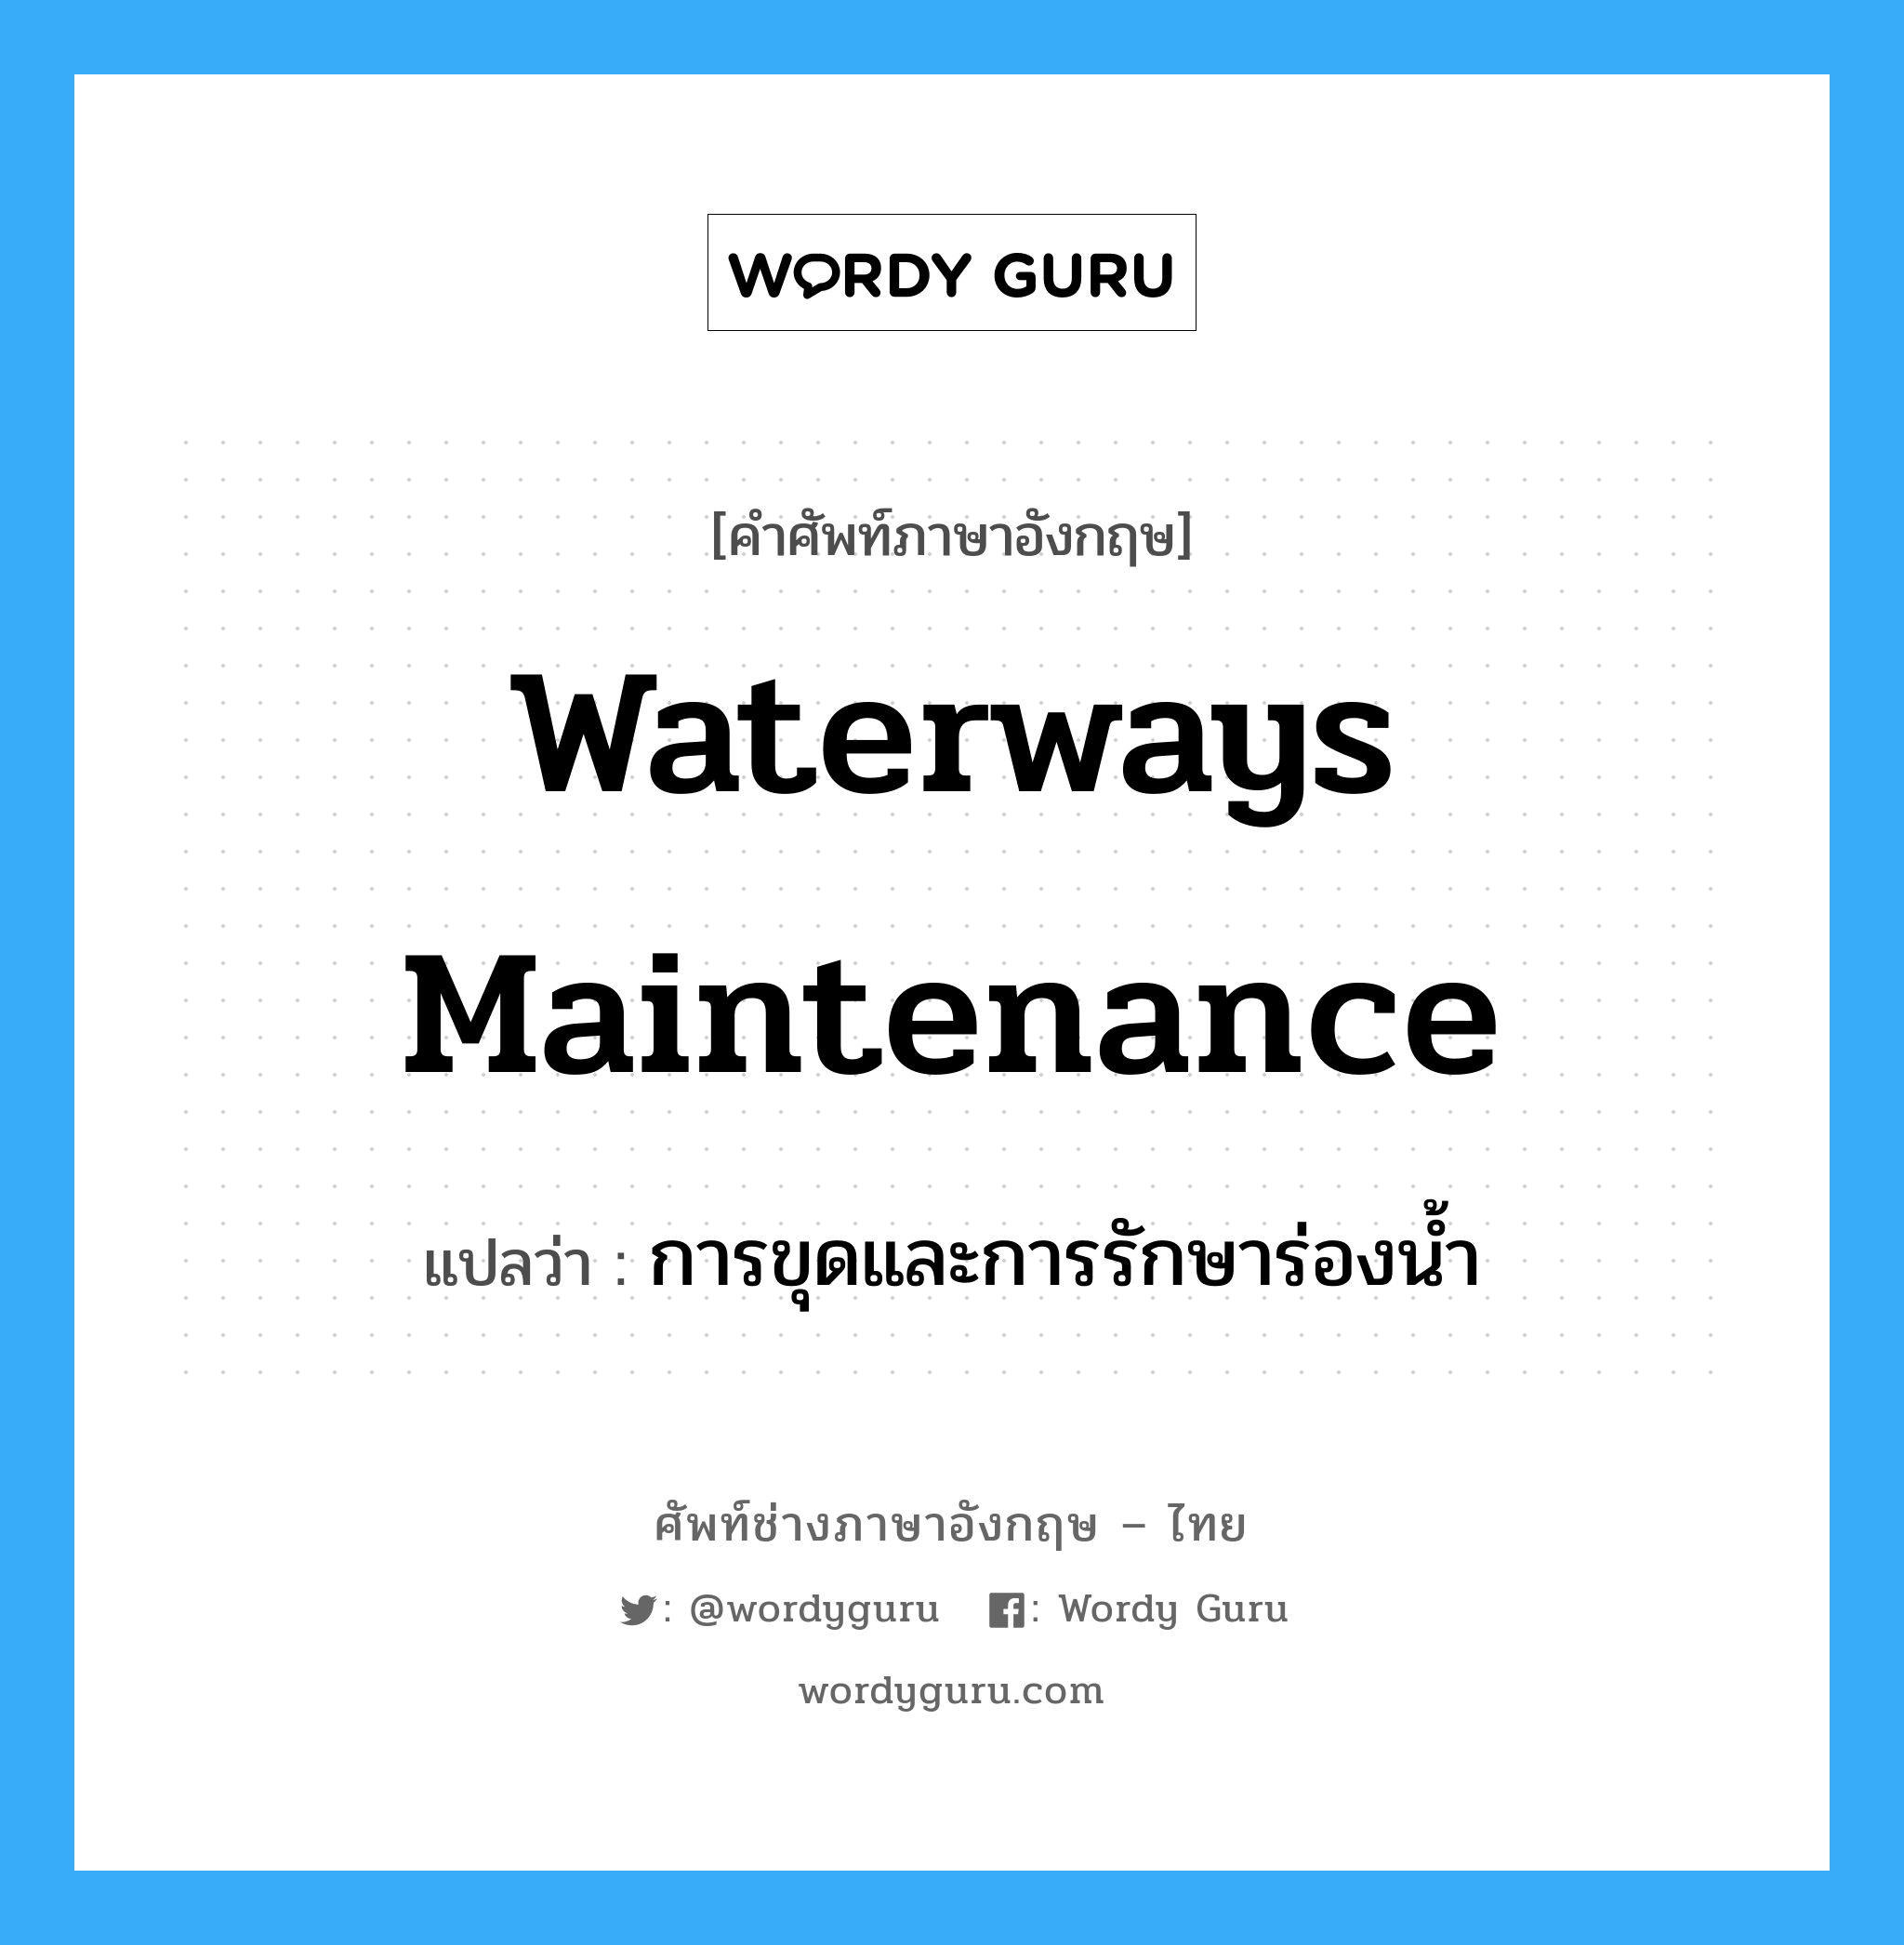 การขุดและการรักษาร่องน้ำ ภาษาอังกฤษ?, คำศัพท์ช่างภาษาอังกฤษ - ไทย การขุดและการรักษาร่องน้ำ คำศัพท์ภาษาอังกฤษ การขุดและการรักษาร่องน้ำ แปลว่า waterways maintenance